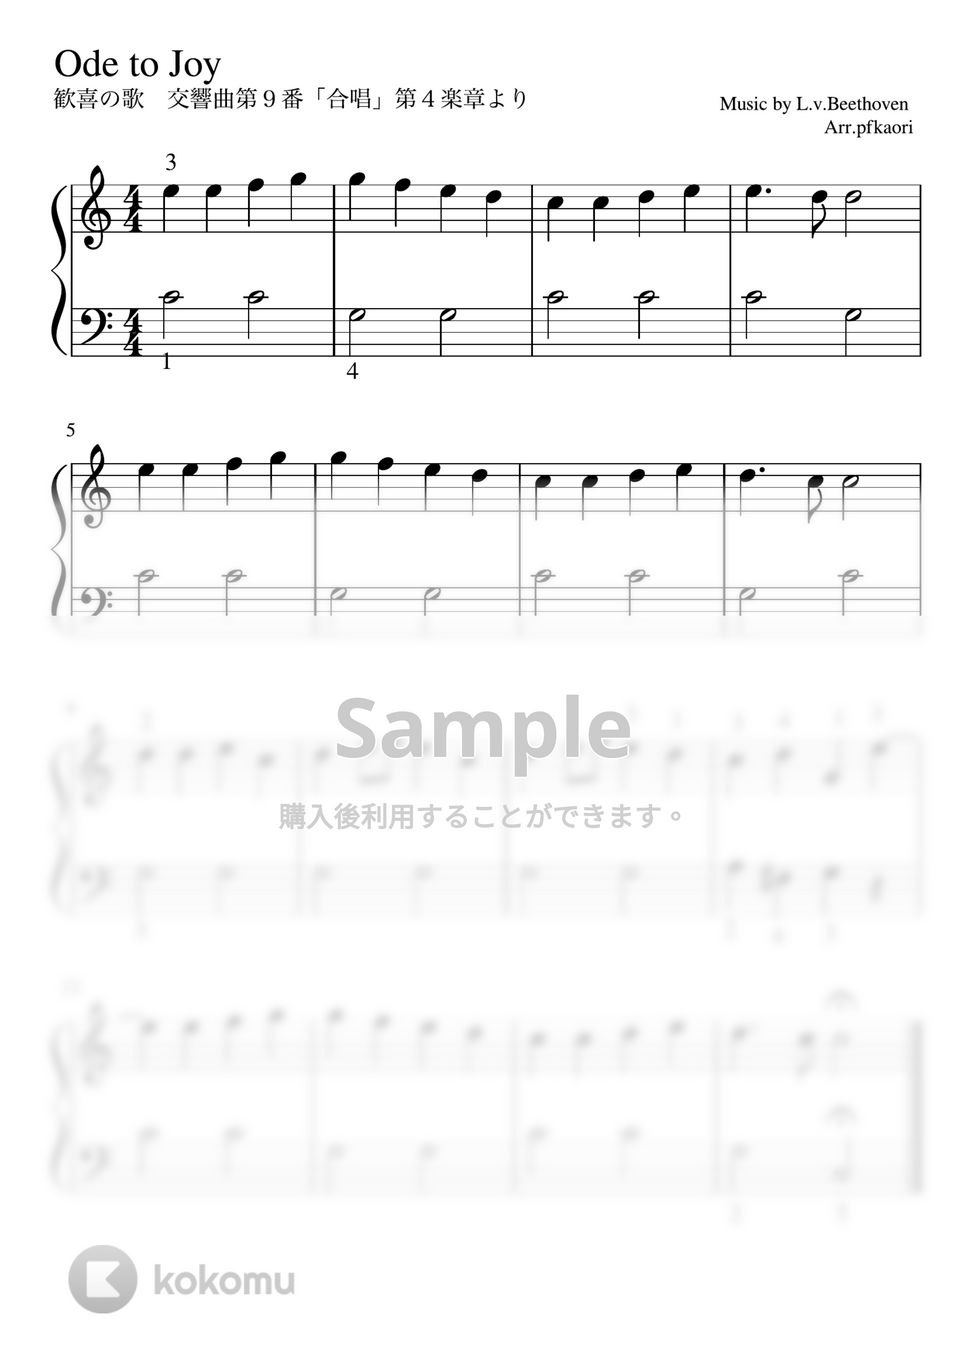 ベートーヴェン - 歓喜の歌 (Cdur・ピアノソロ初級 /oct up) by pfkaori